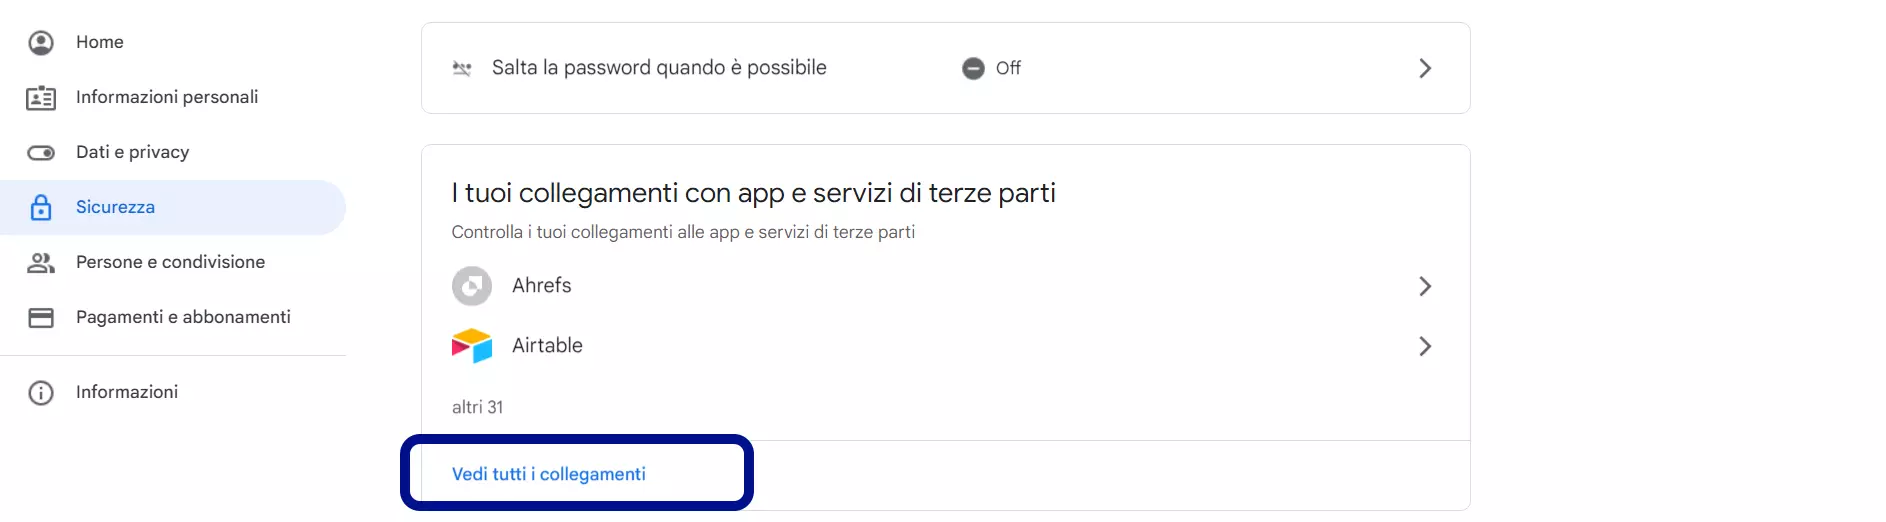 Sezione "I tuoi collegamenti con app e servizi di terze parti" dell'account Google